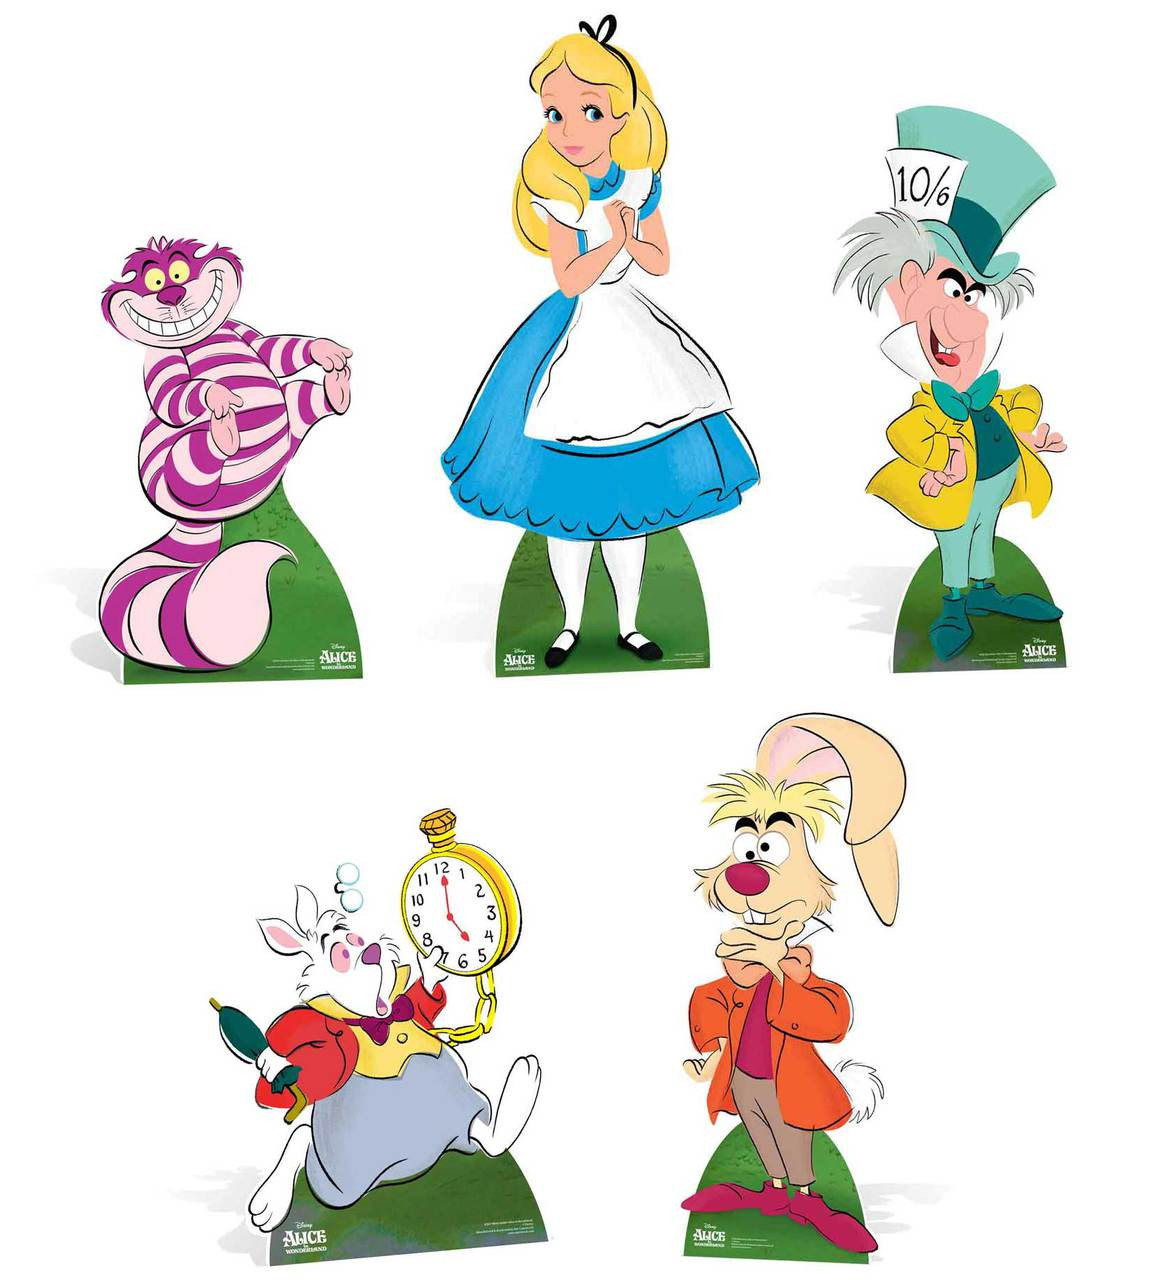 alice in wonderland cartoon movie characters